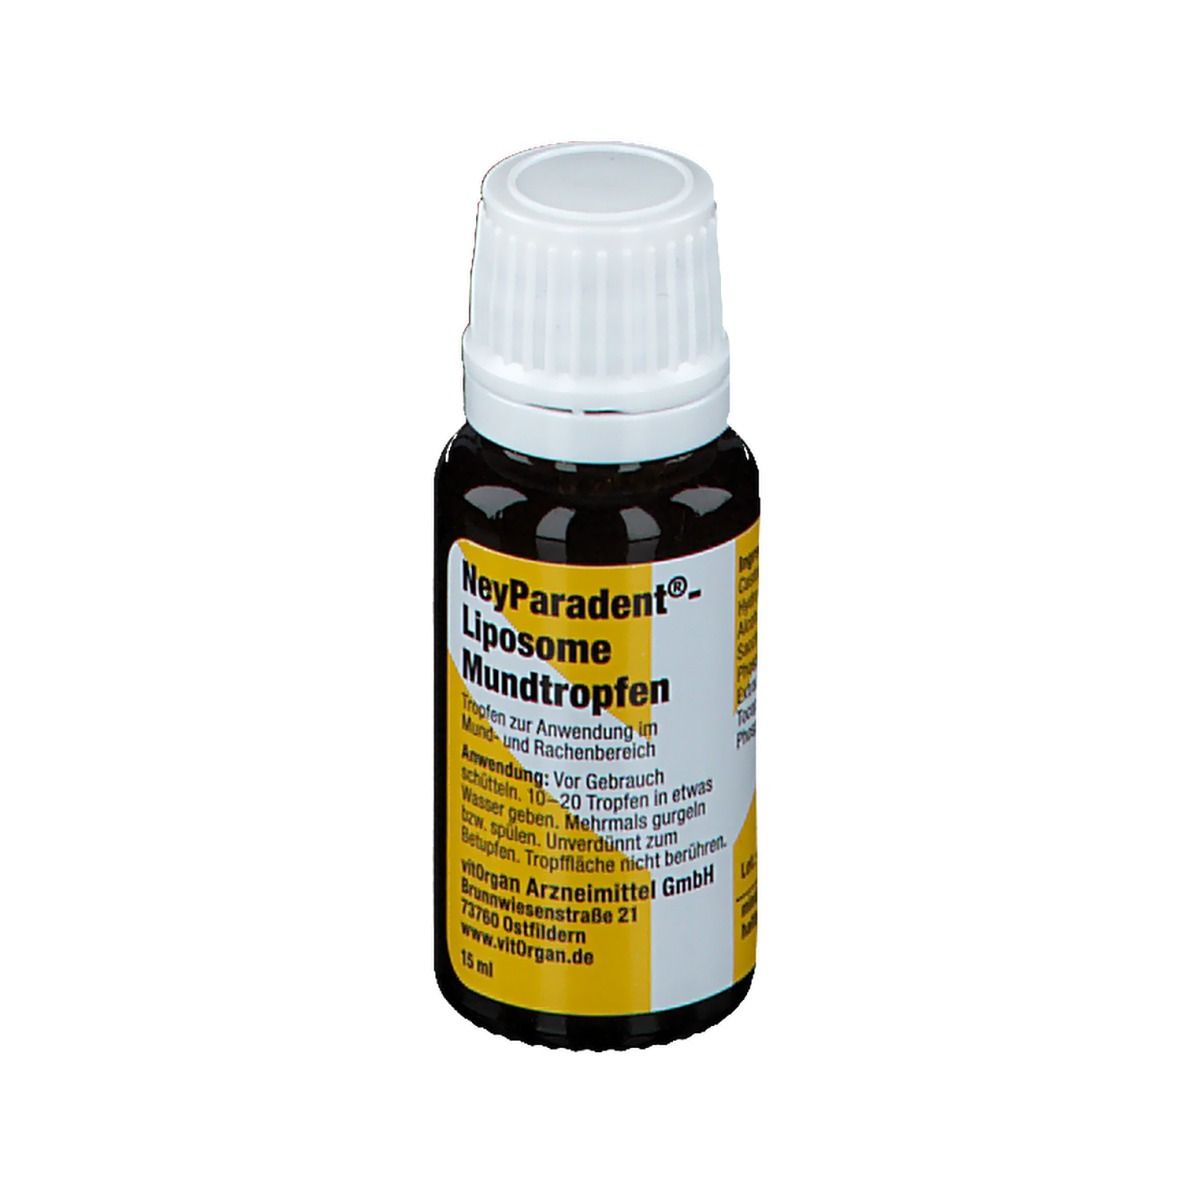 NeyParadent®- Liposome Mundtropfen